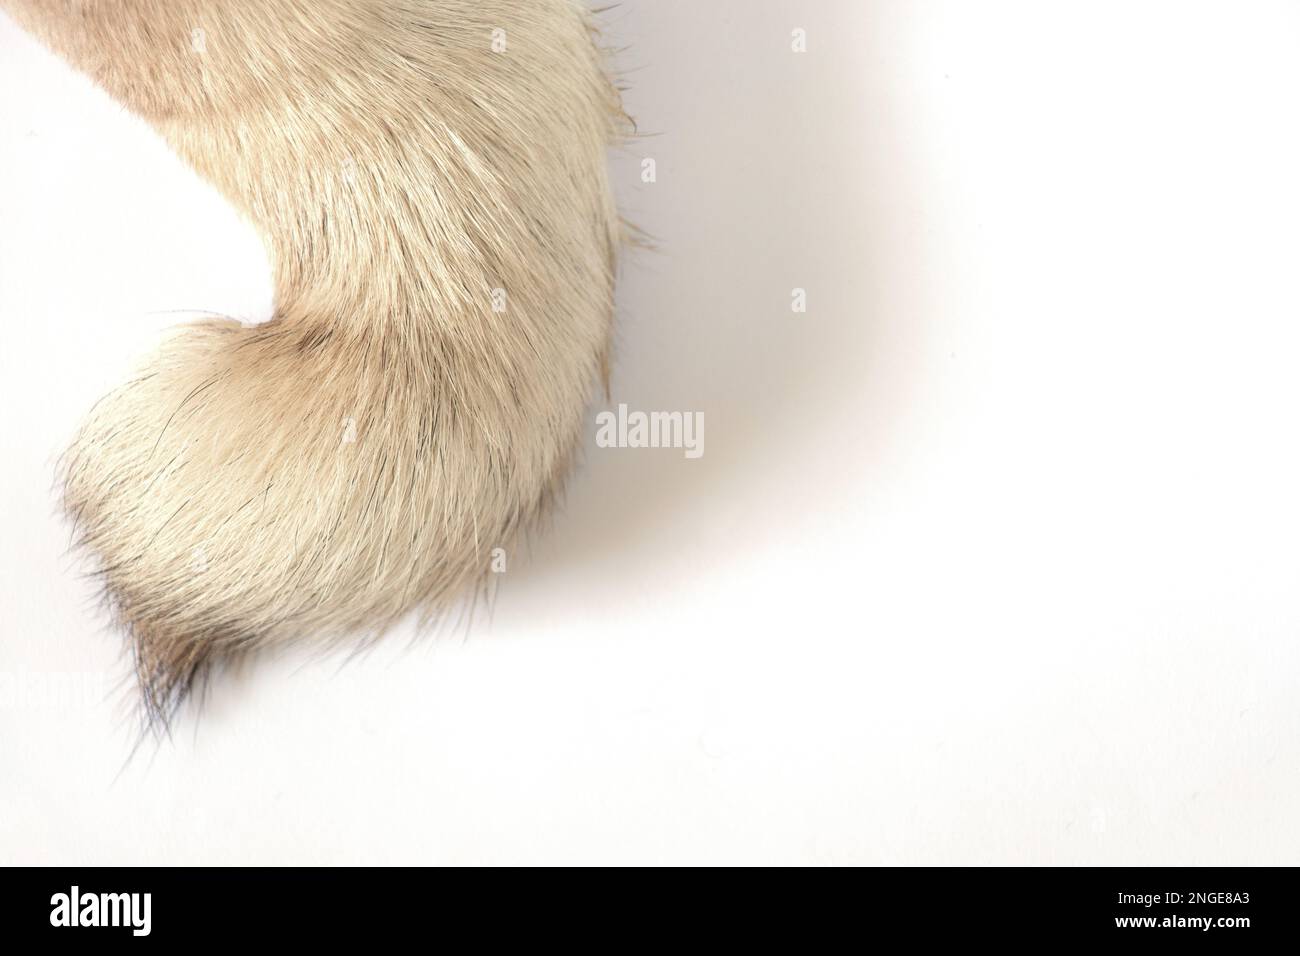 pug dog tail on white background close-up Stock Photo